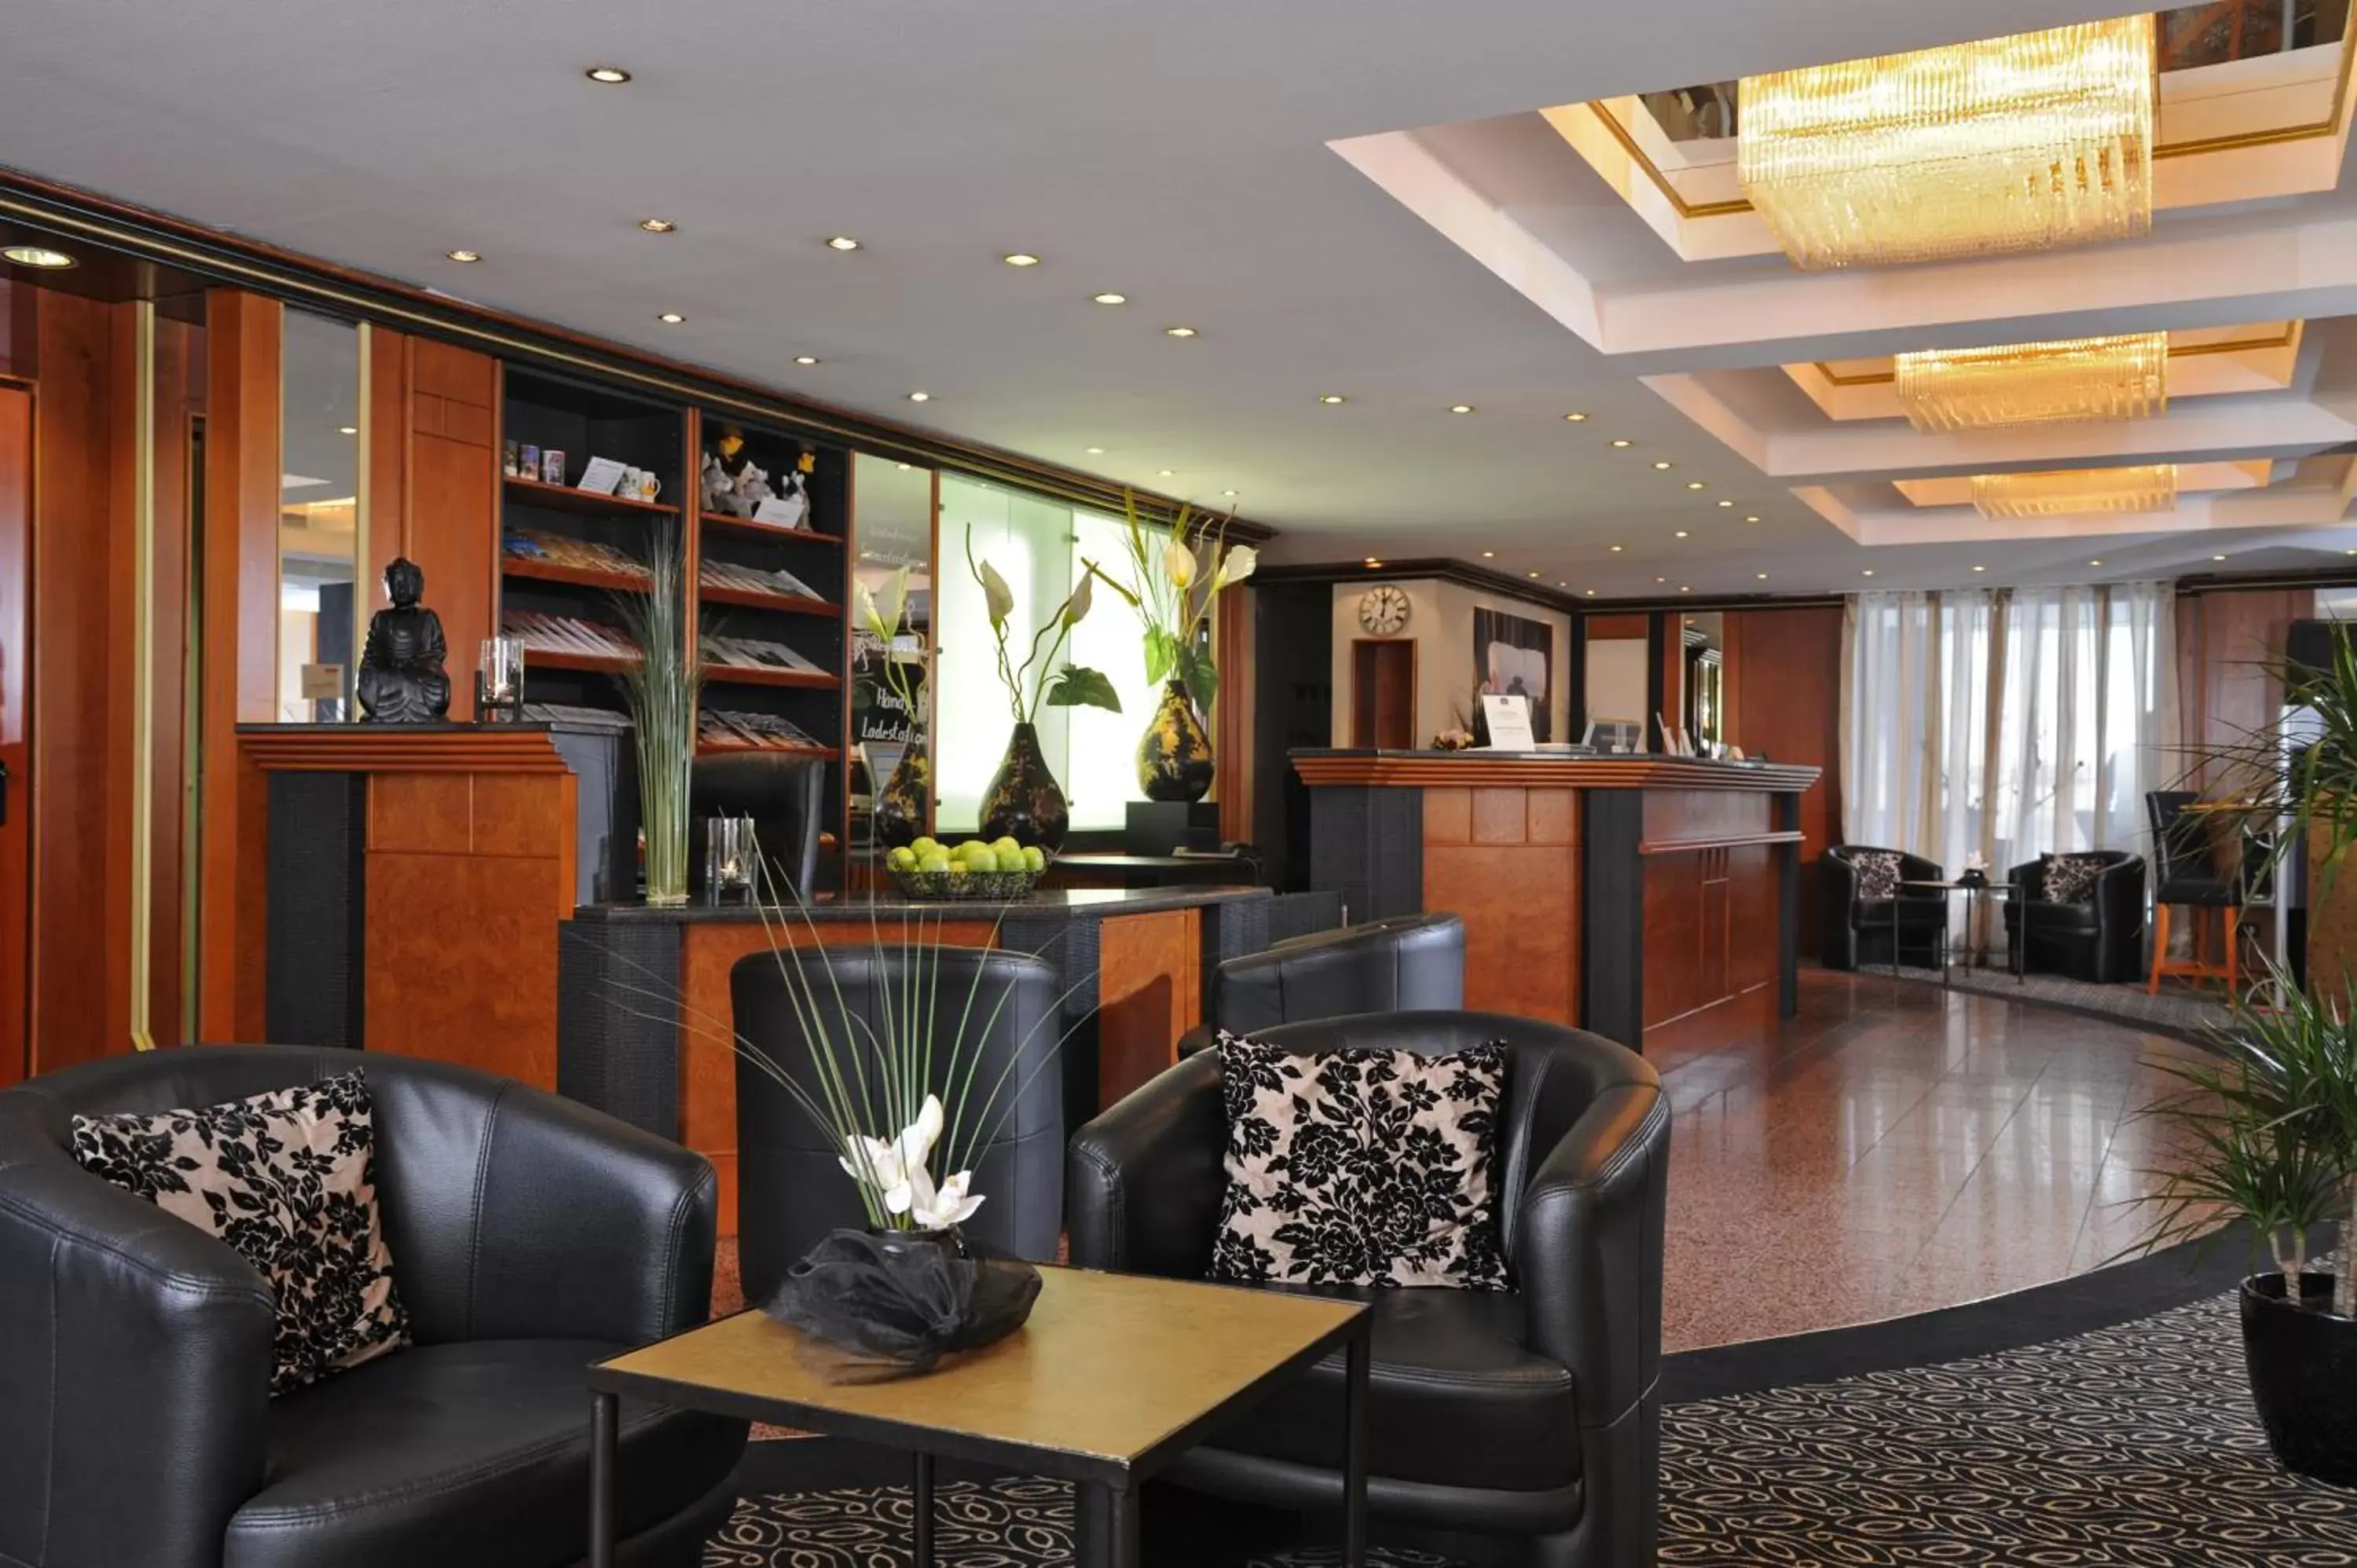 Lobby or reception, Lobby/Reception in Best Western Hotel zur Post